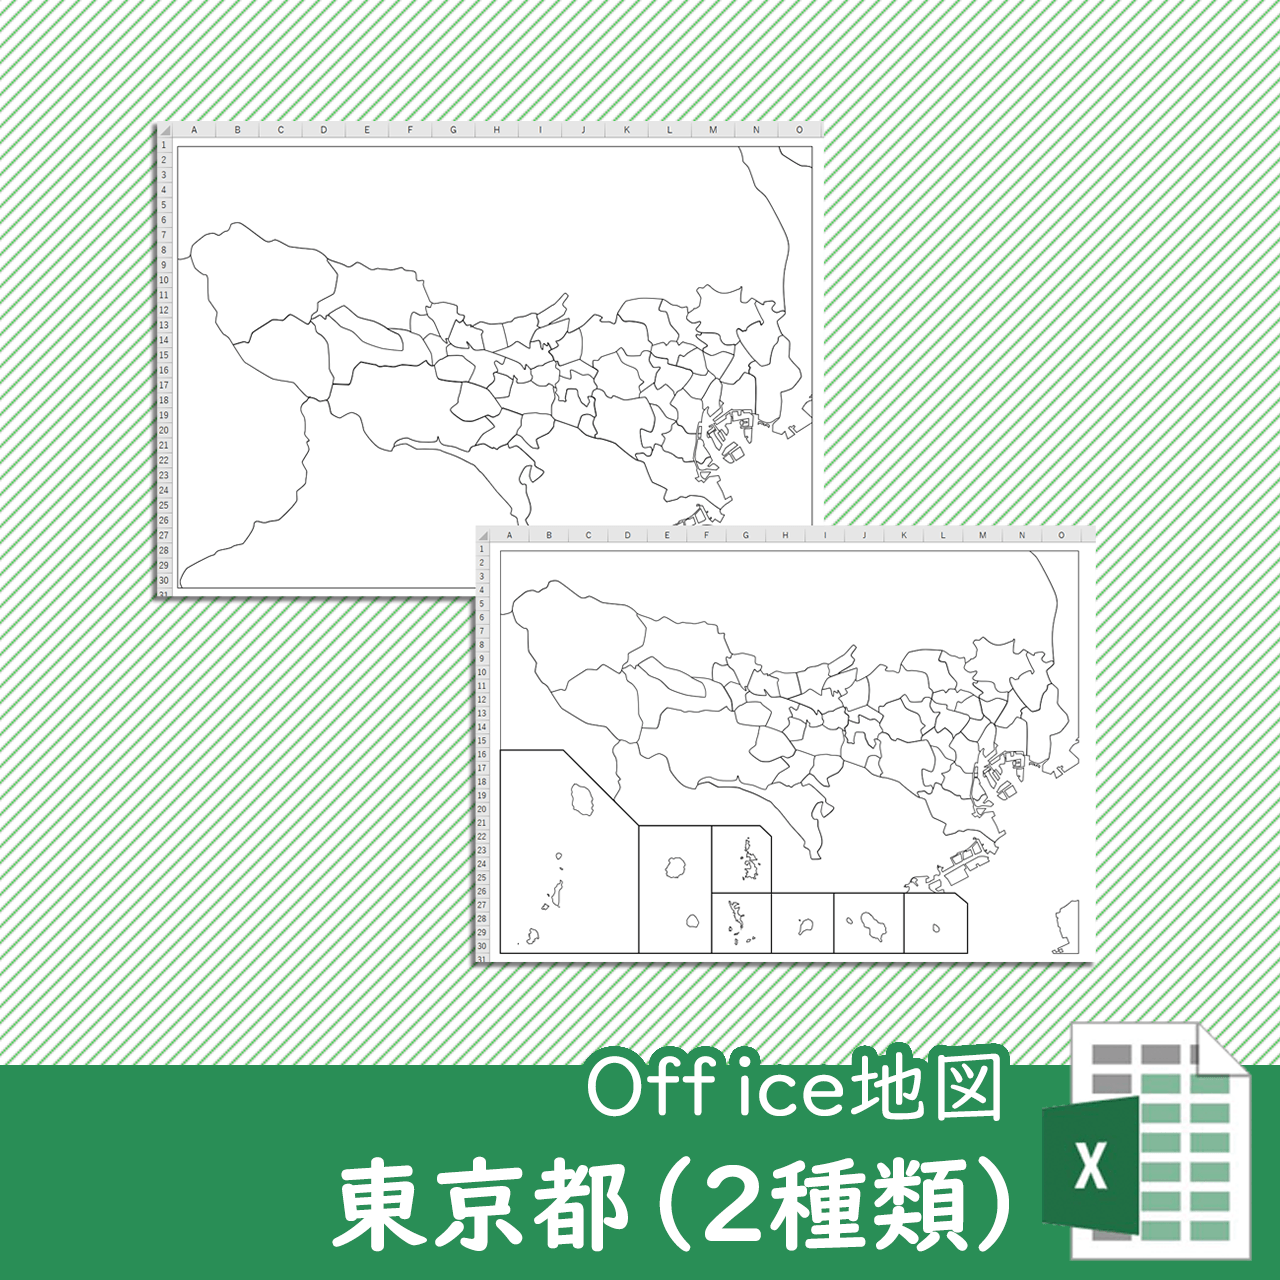 東京都中心部のOffice地図のサムネイル